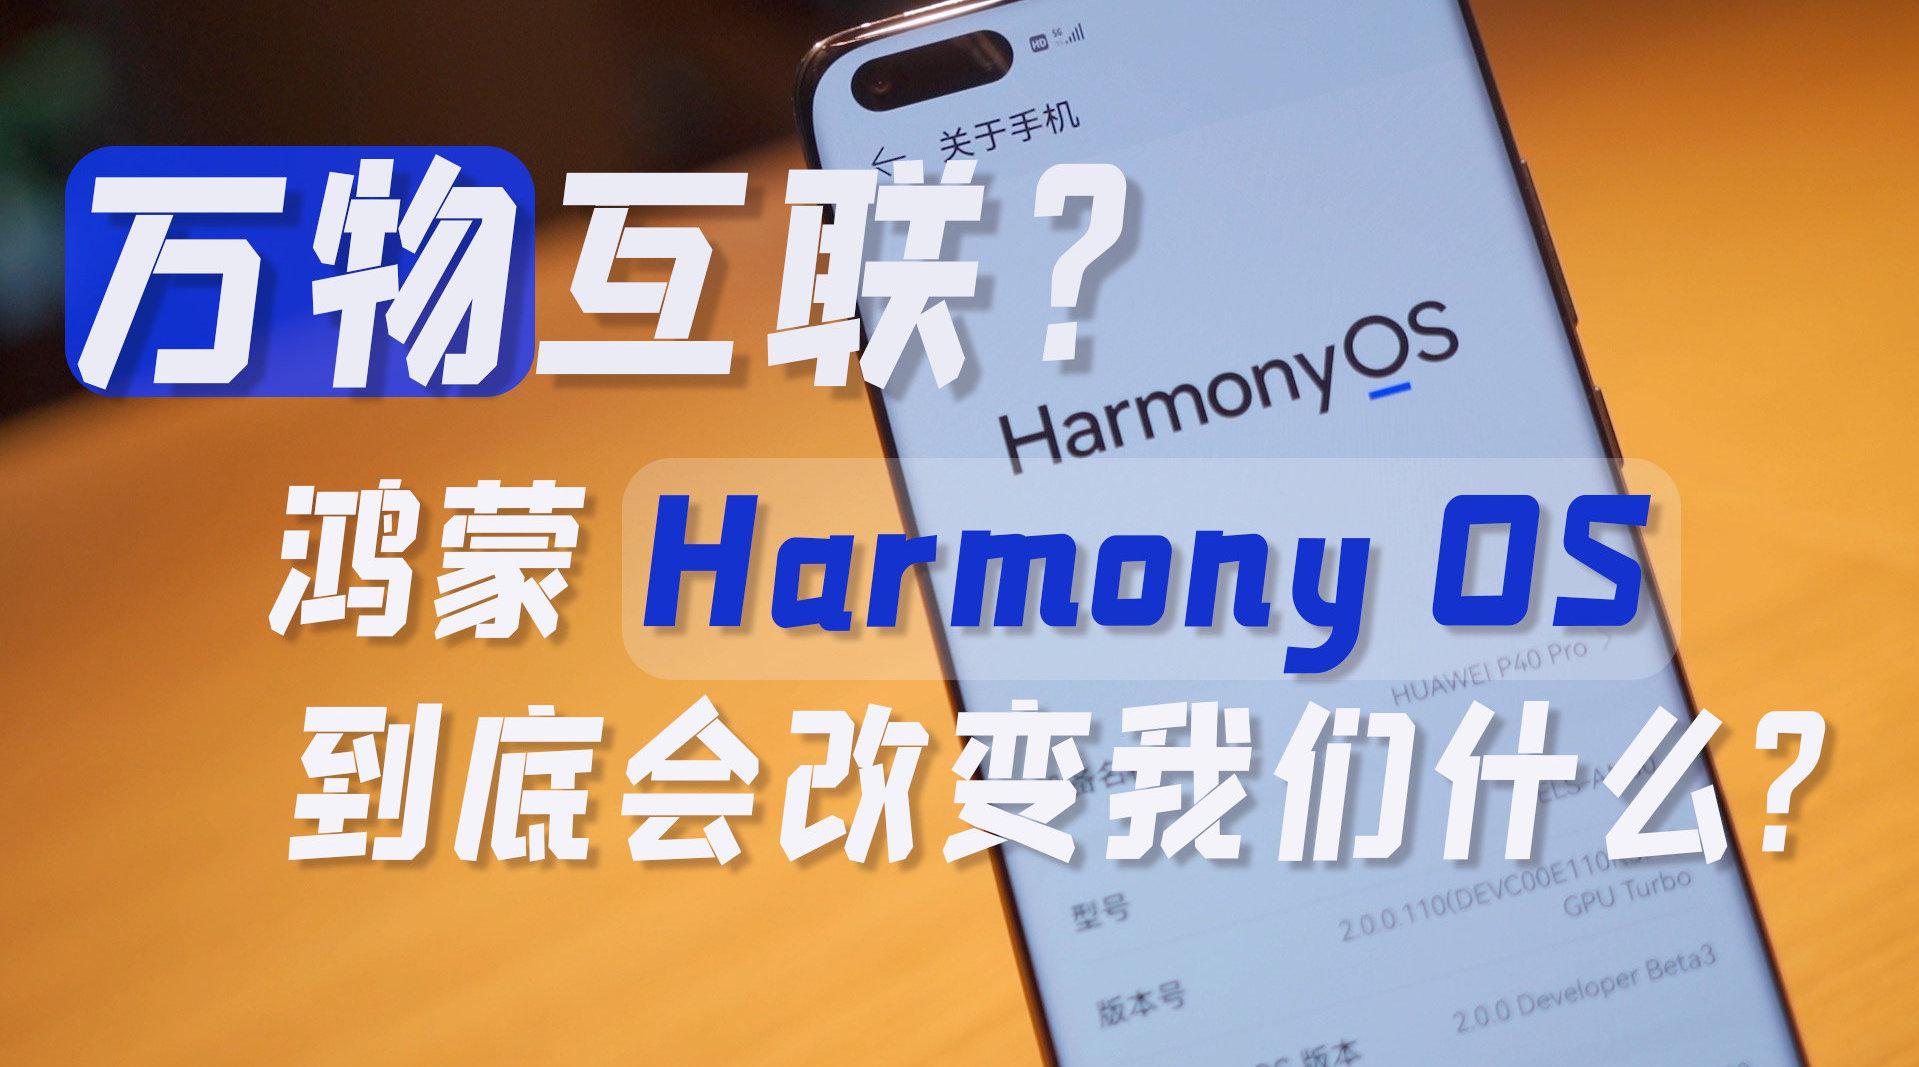 万物互联？鸿蒙Harmony OS到底会改变我们什么？